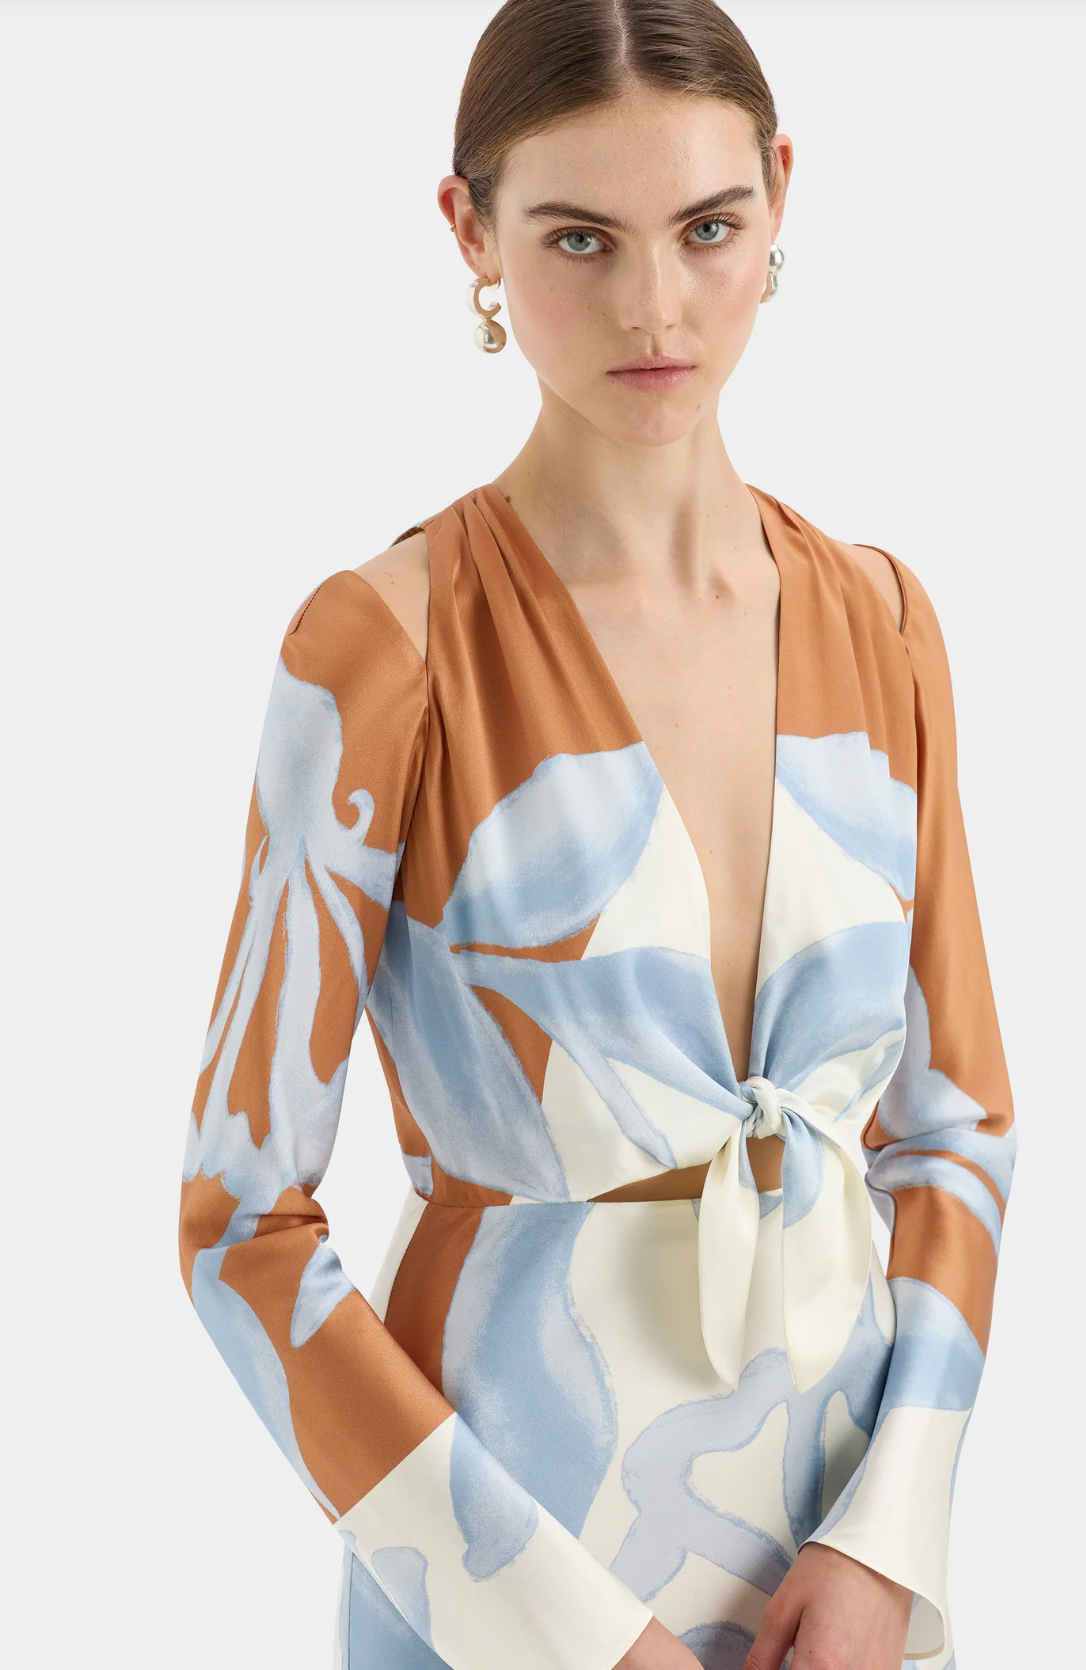 Sorrento Scarf Maxi Dress Scarpia Print Size 8